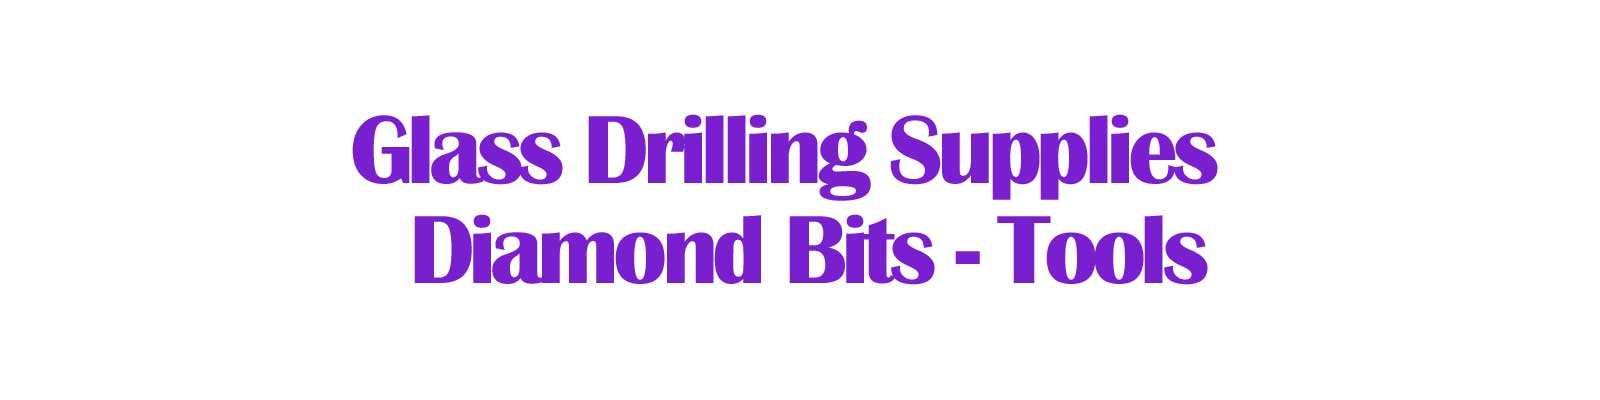 Glass Drilling Supplies - Diamond Bits - Tools